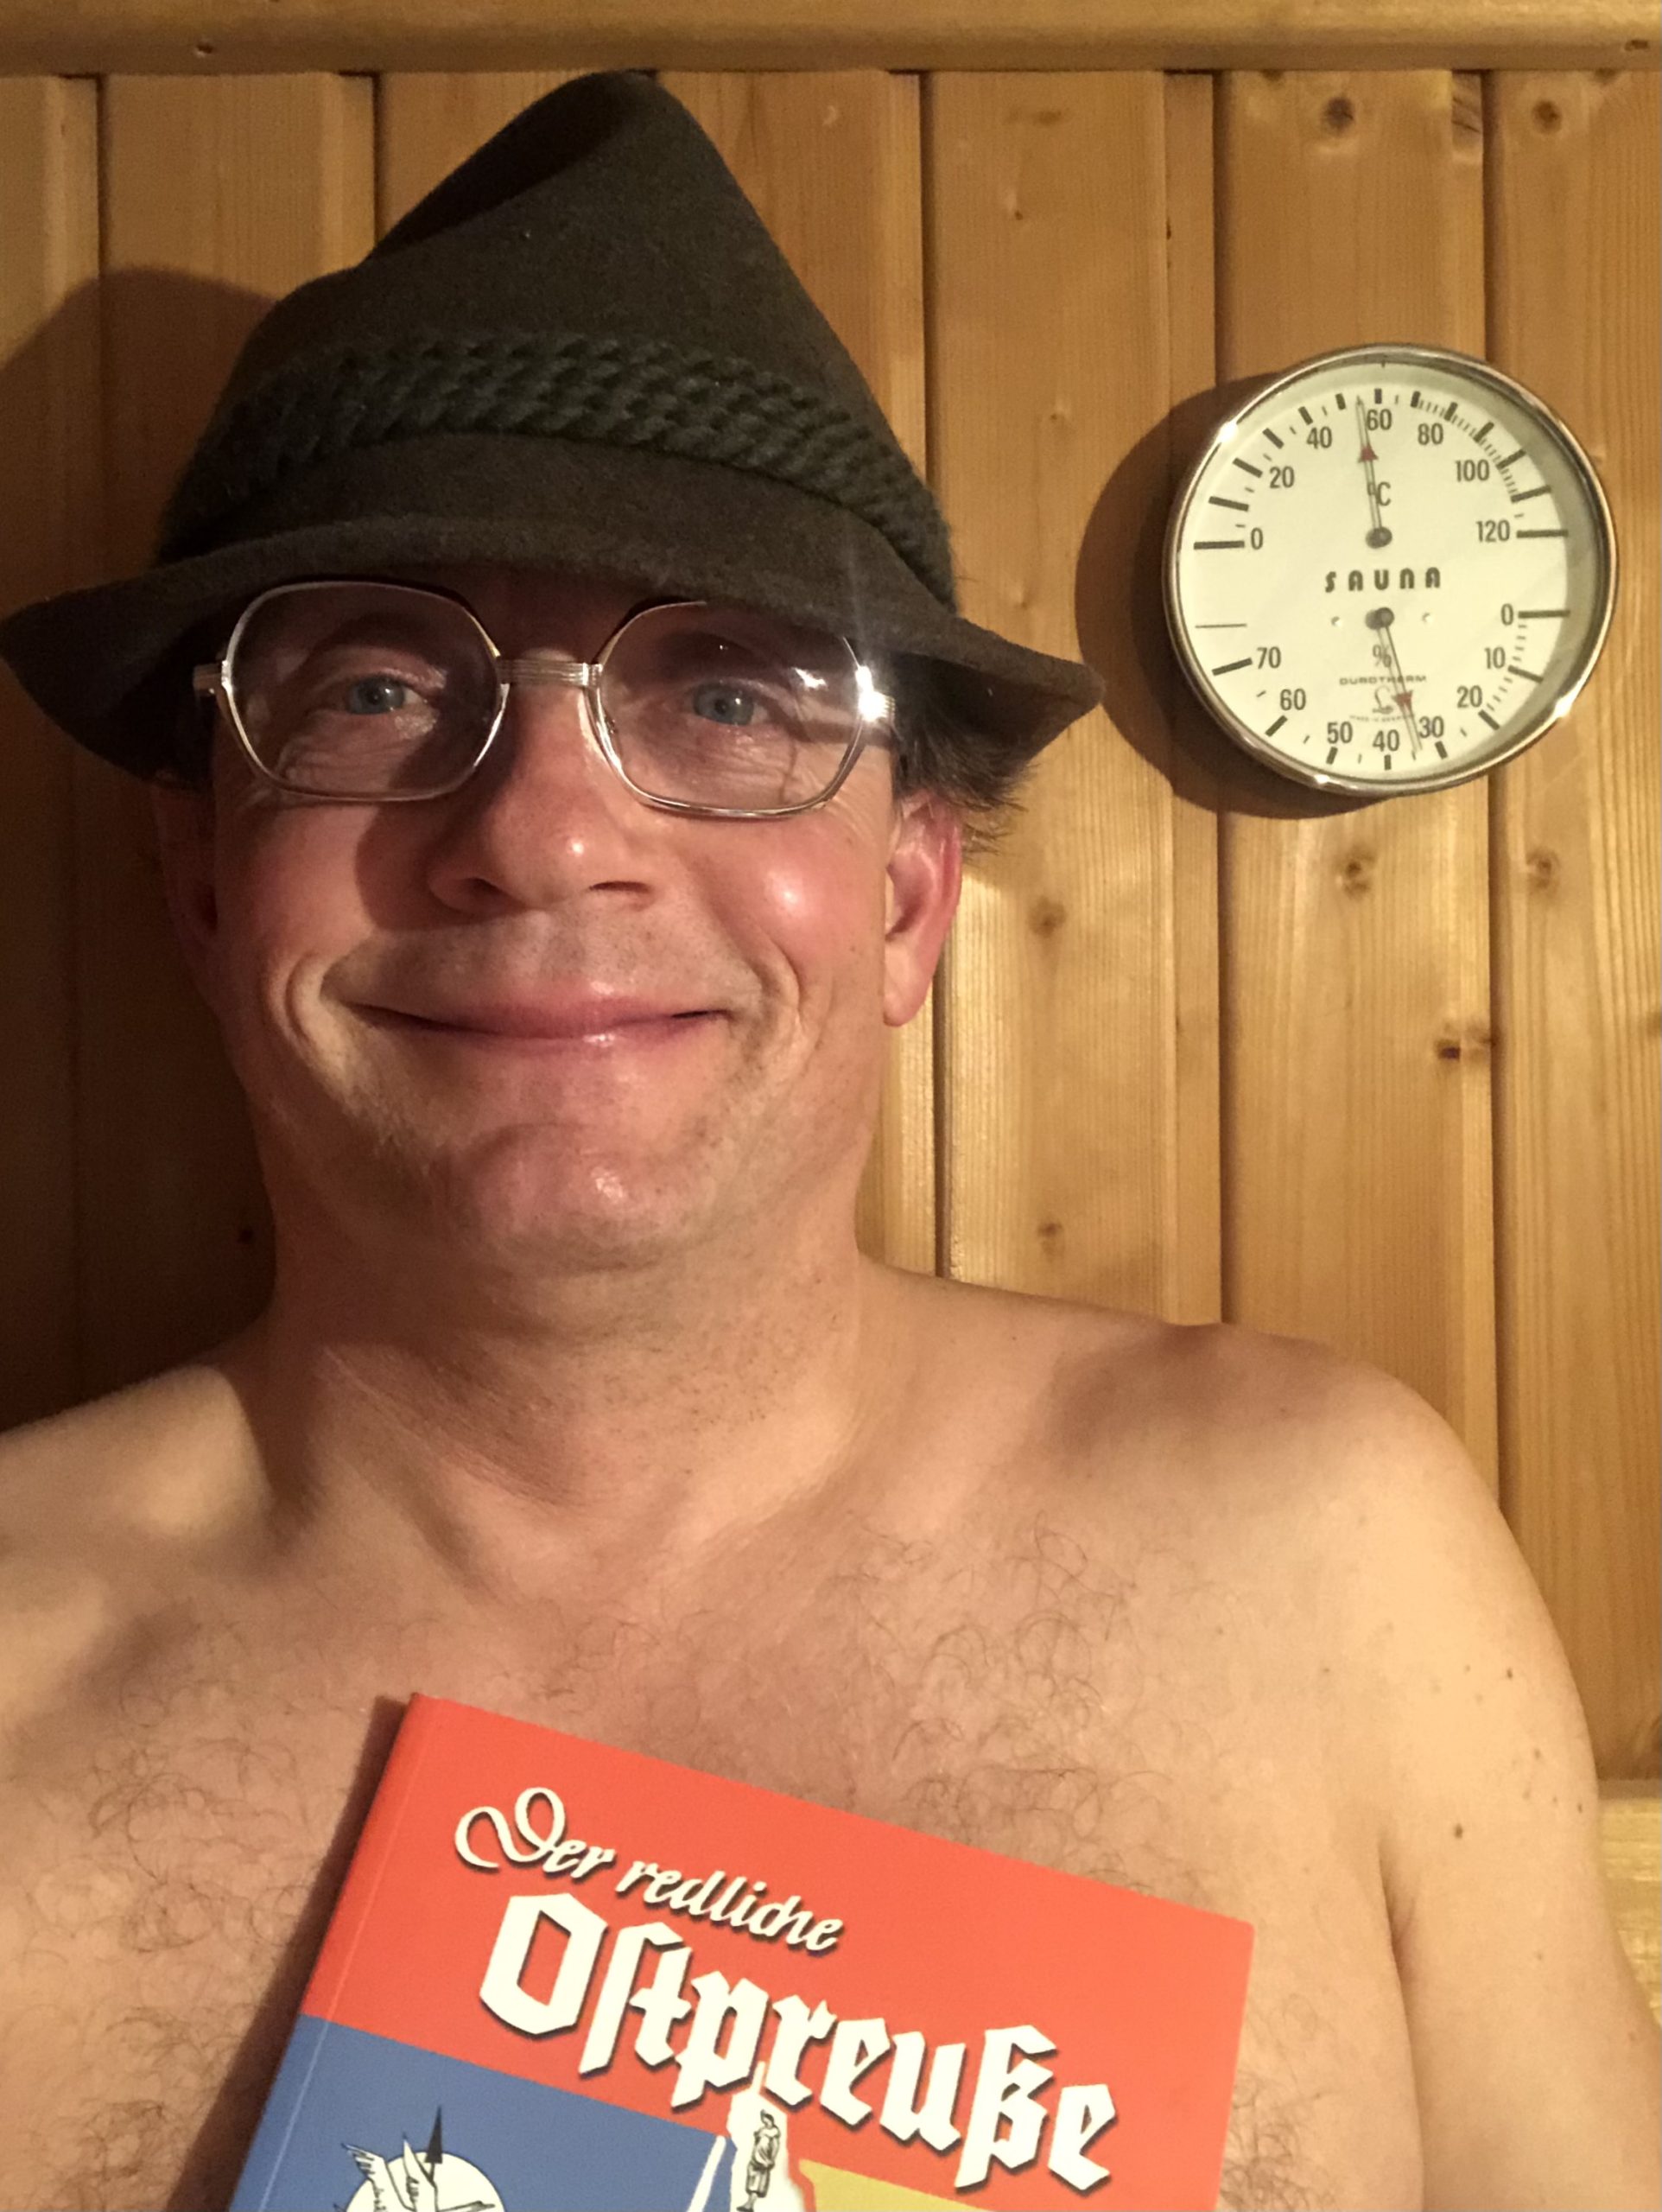 Autor Wigald Boning in der sauna